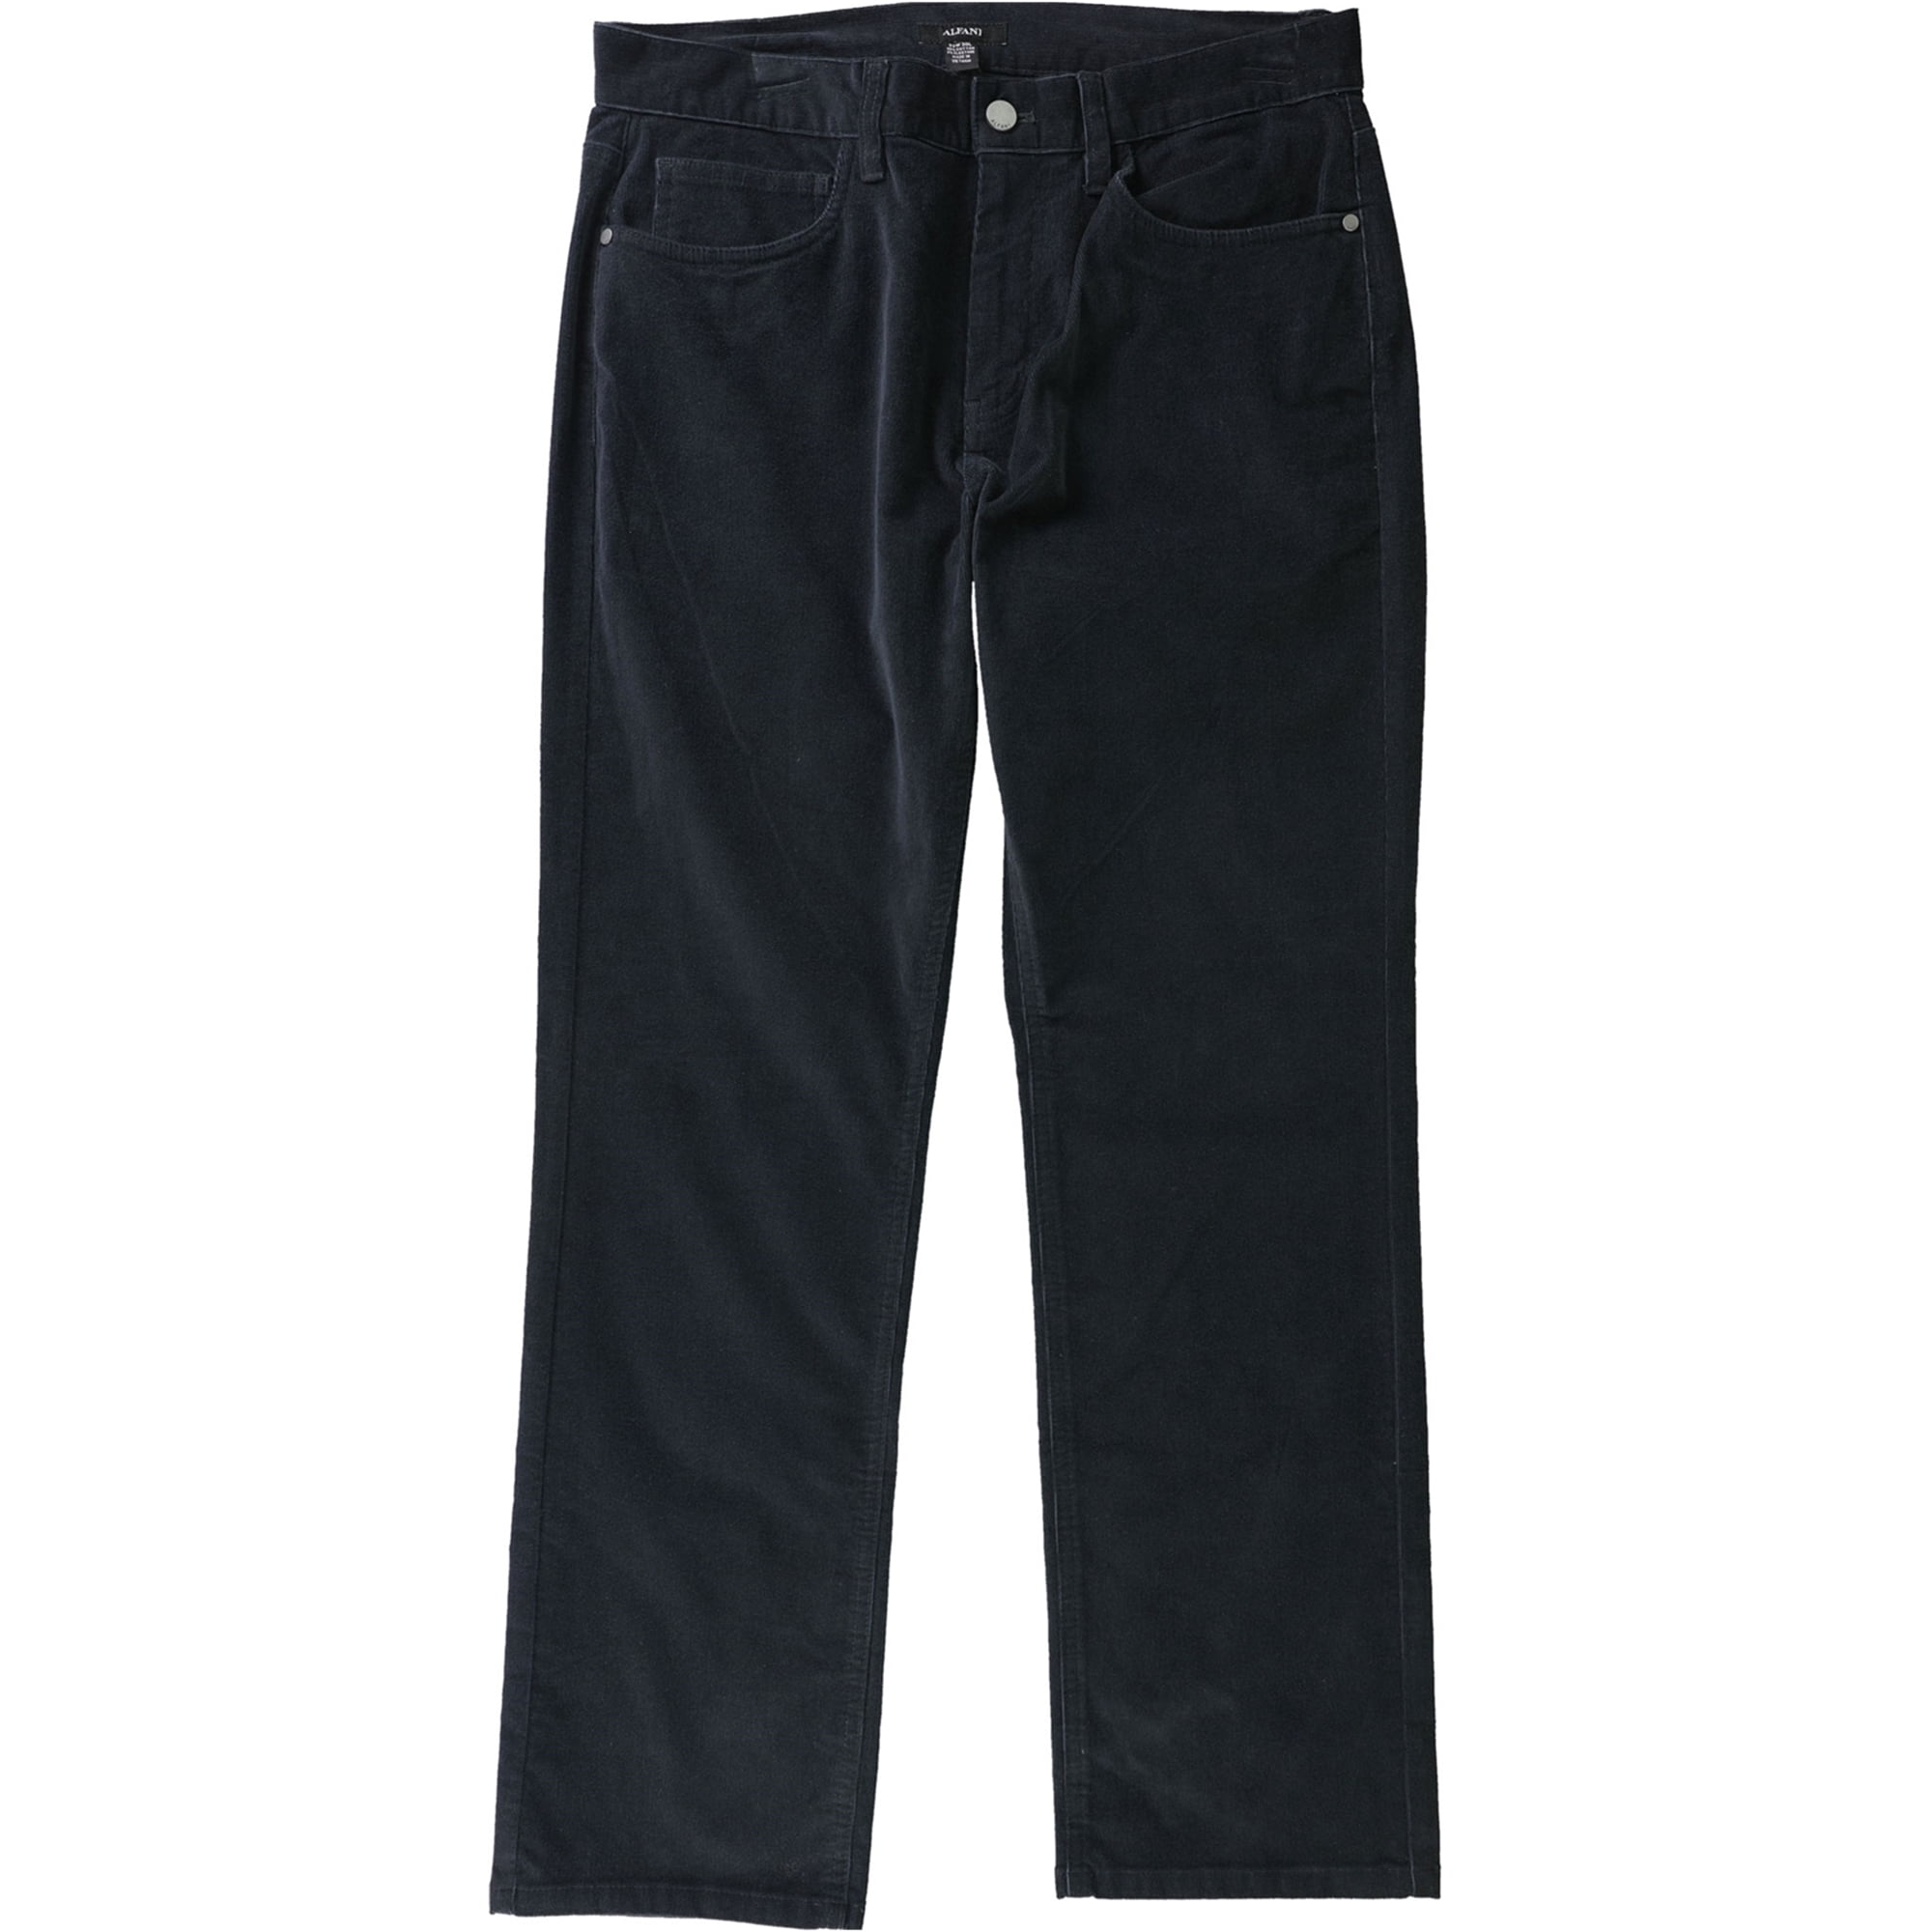 Alfani Mens Solid Casual Corduroy Pants, Black, 30W x 30L - Walmart.com